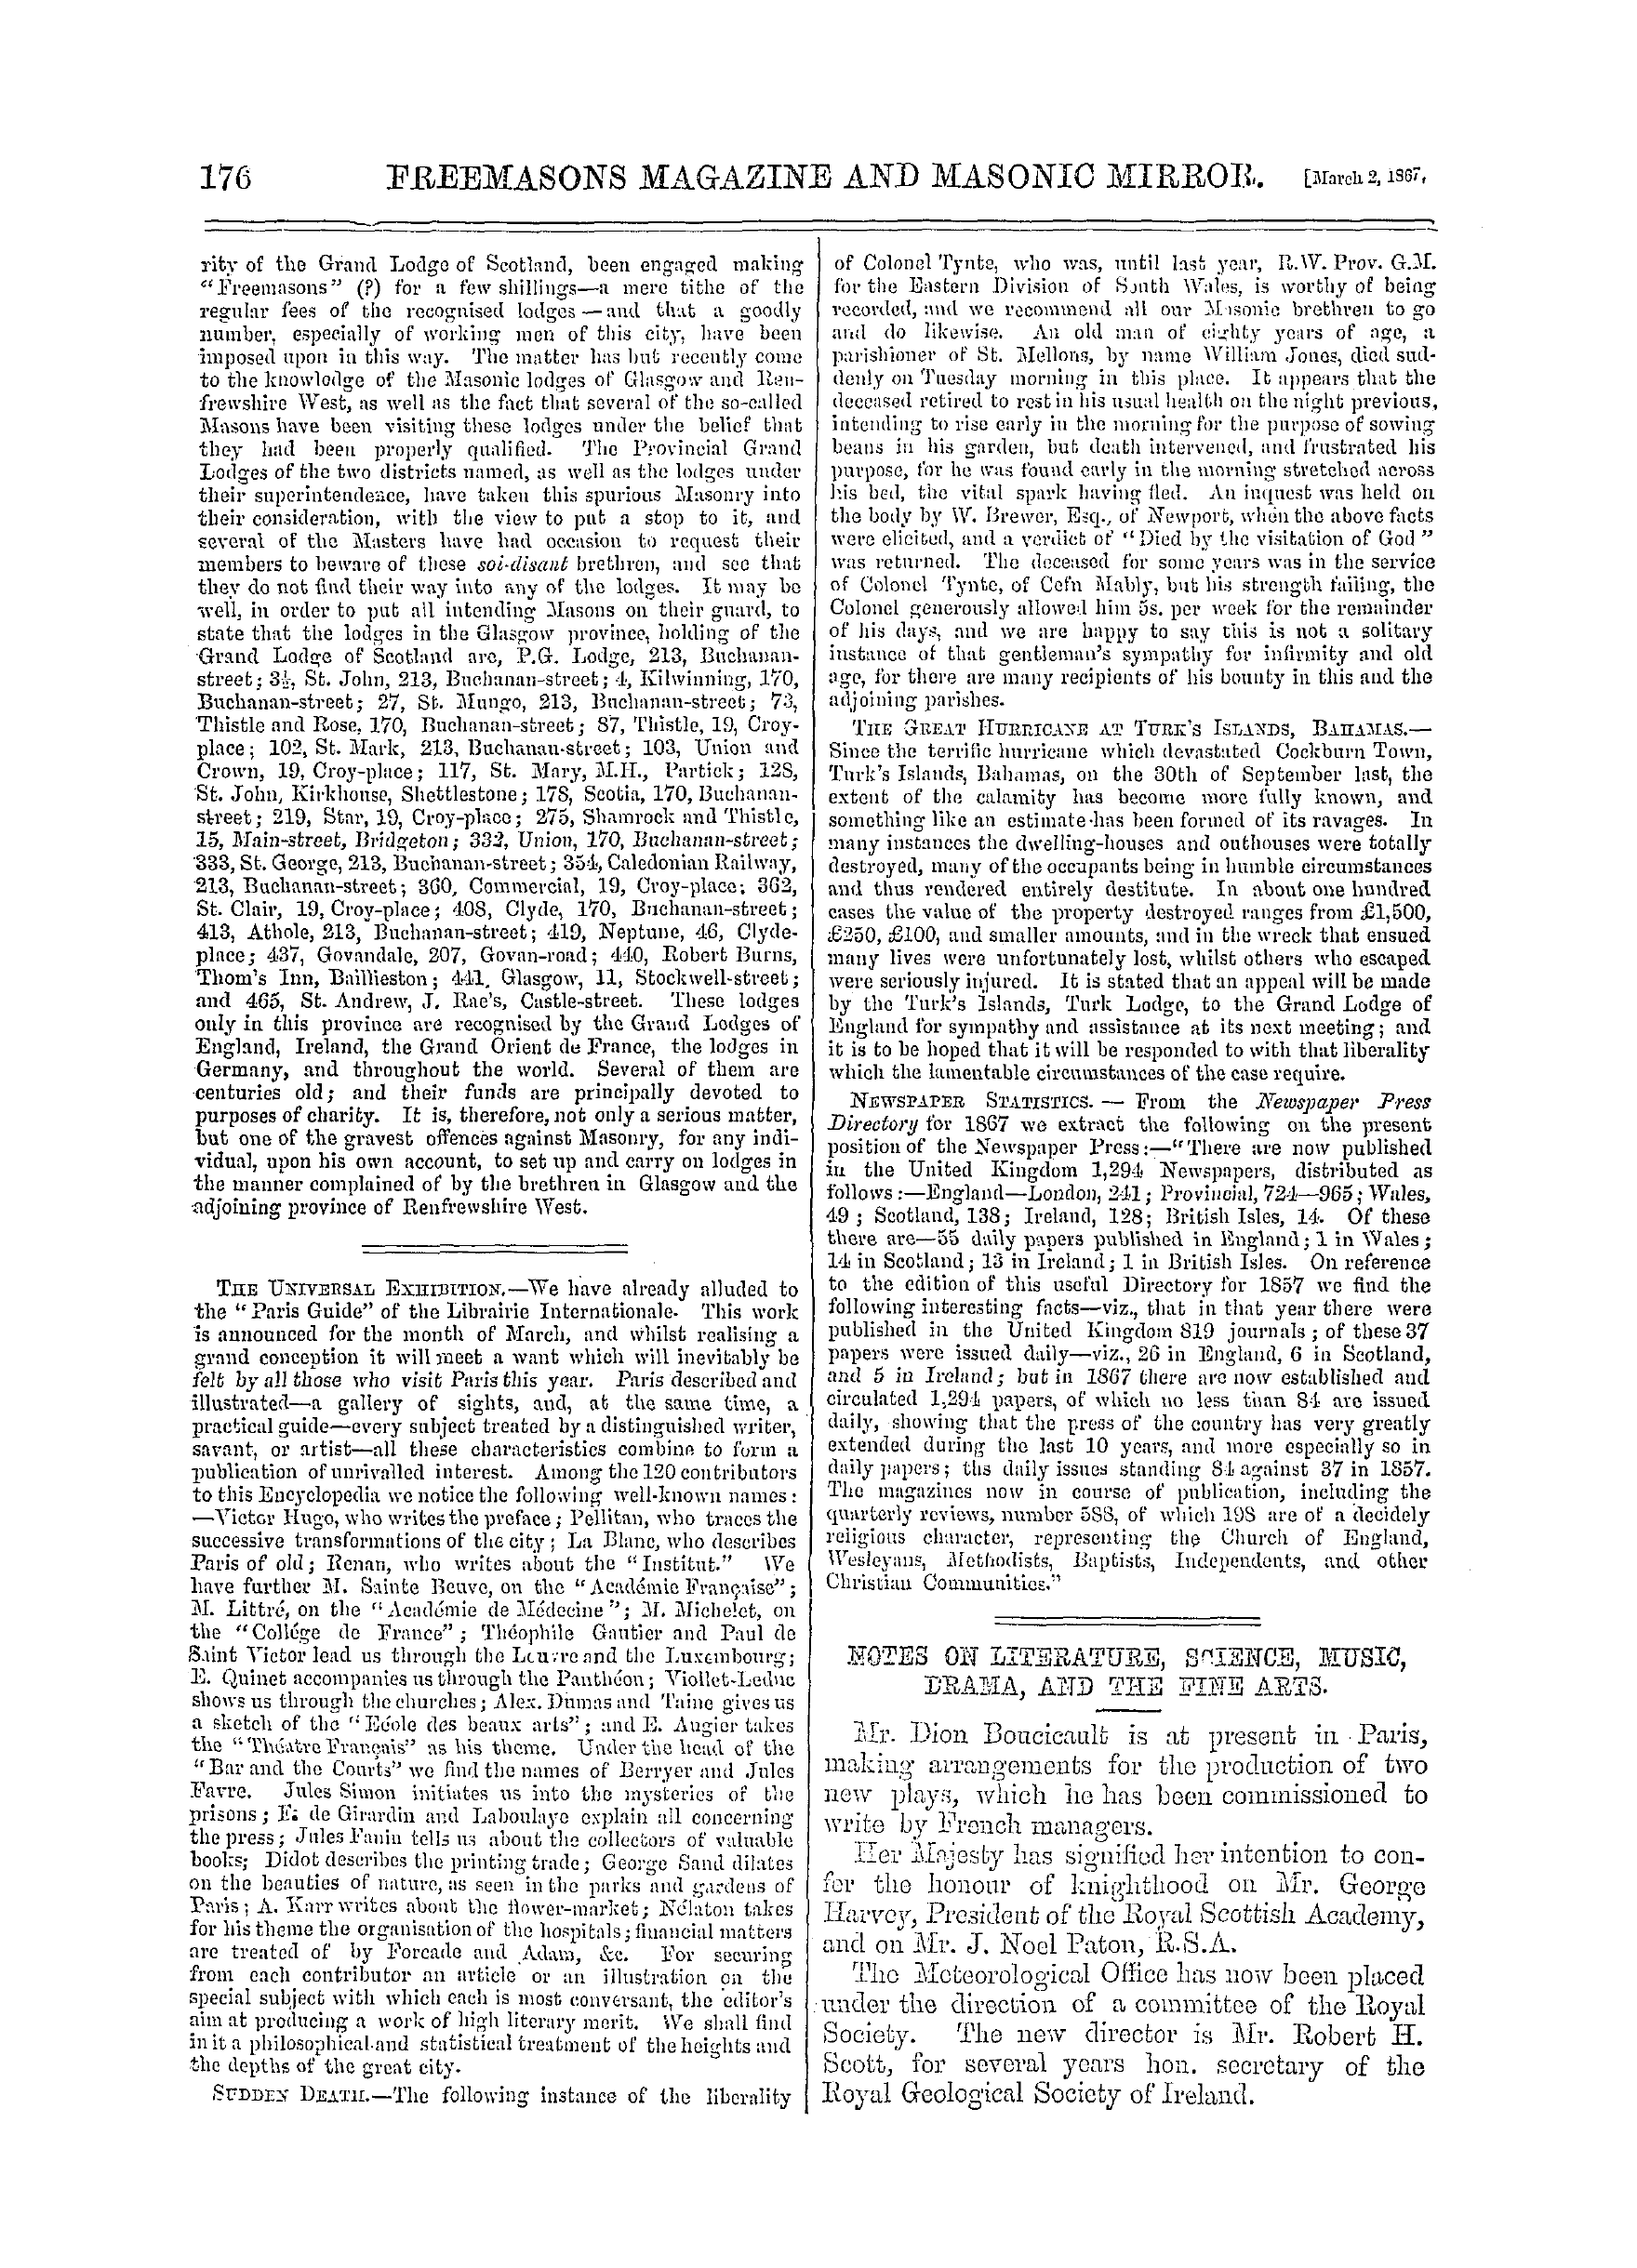 The Freemasons' Monthly Magazine: 1867-03-02: 16